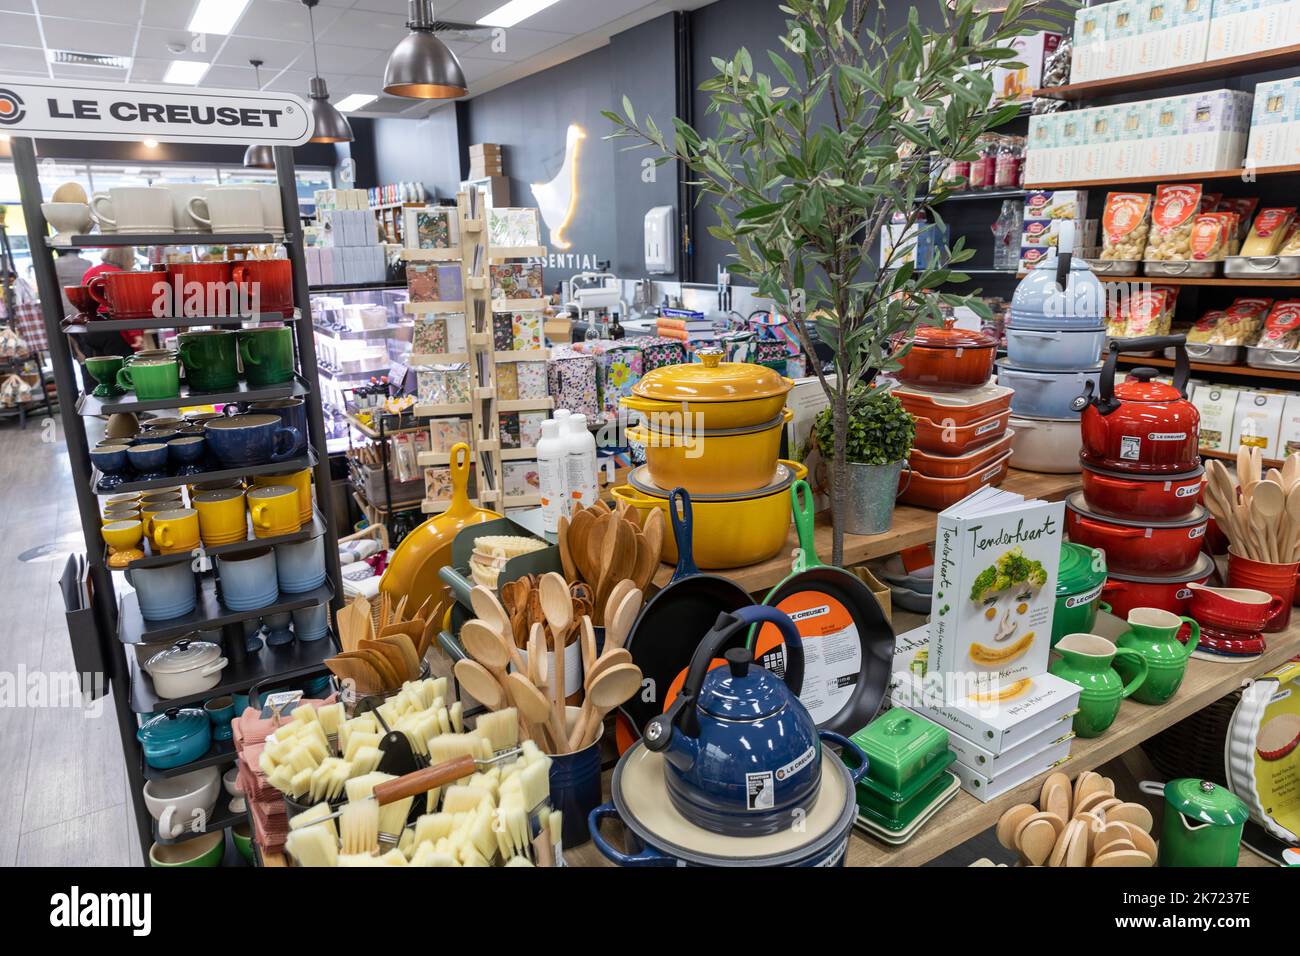 Opening of Le Creuset store in Messancy! — KACHEN